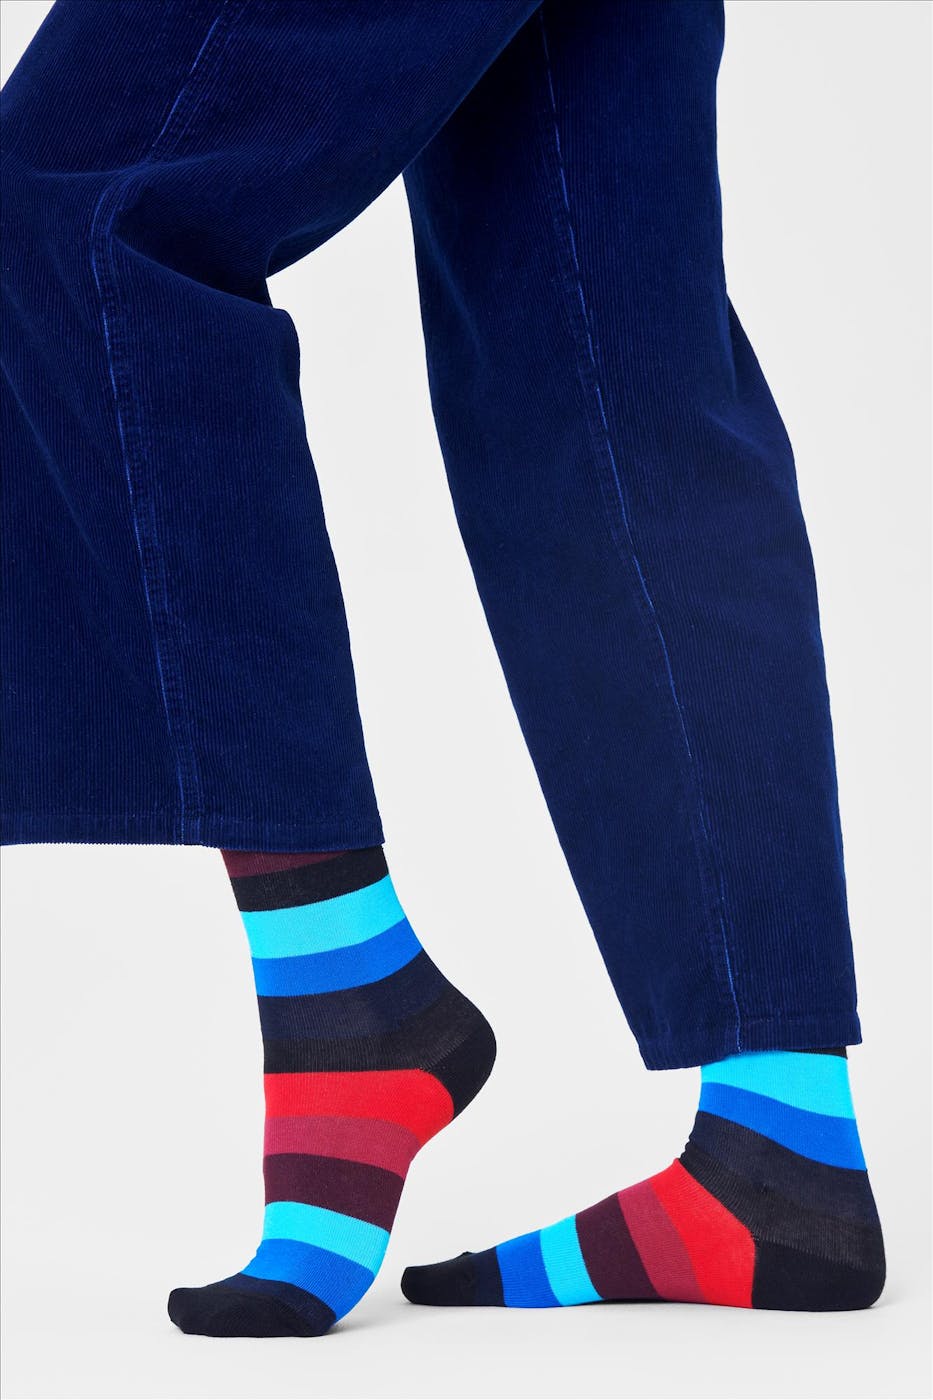 Happy Socks - Blauw-bordeaux-zwarte Stripe sokken, maat: 36-40